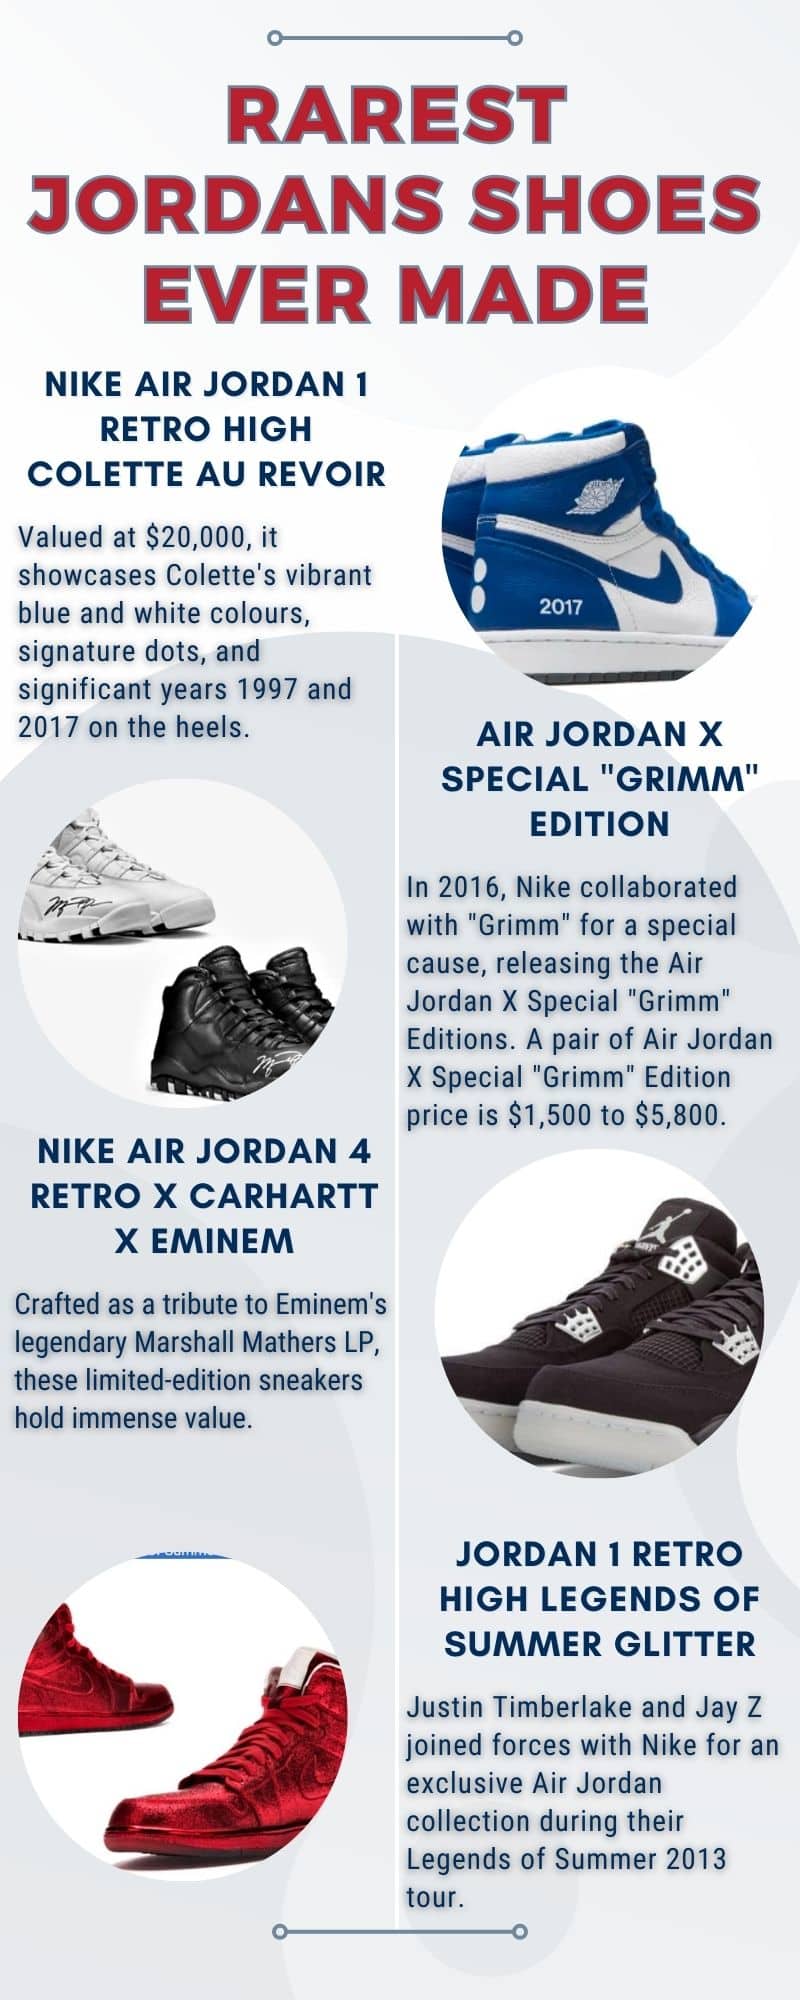 The rarest Jordans shoes